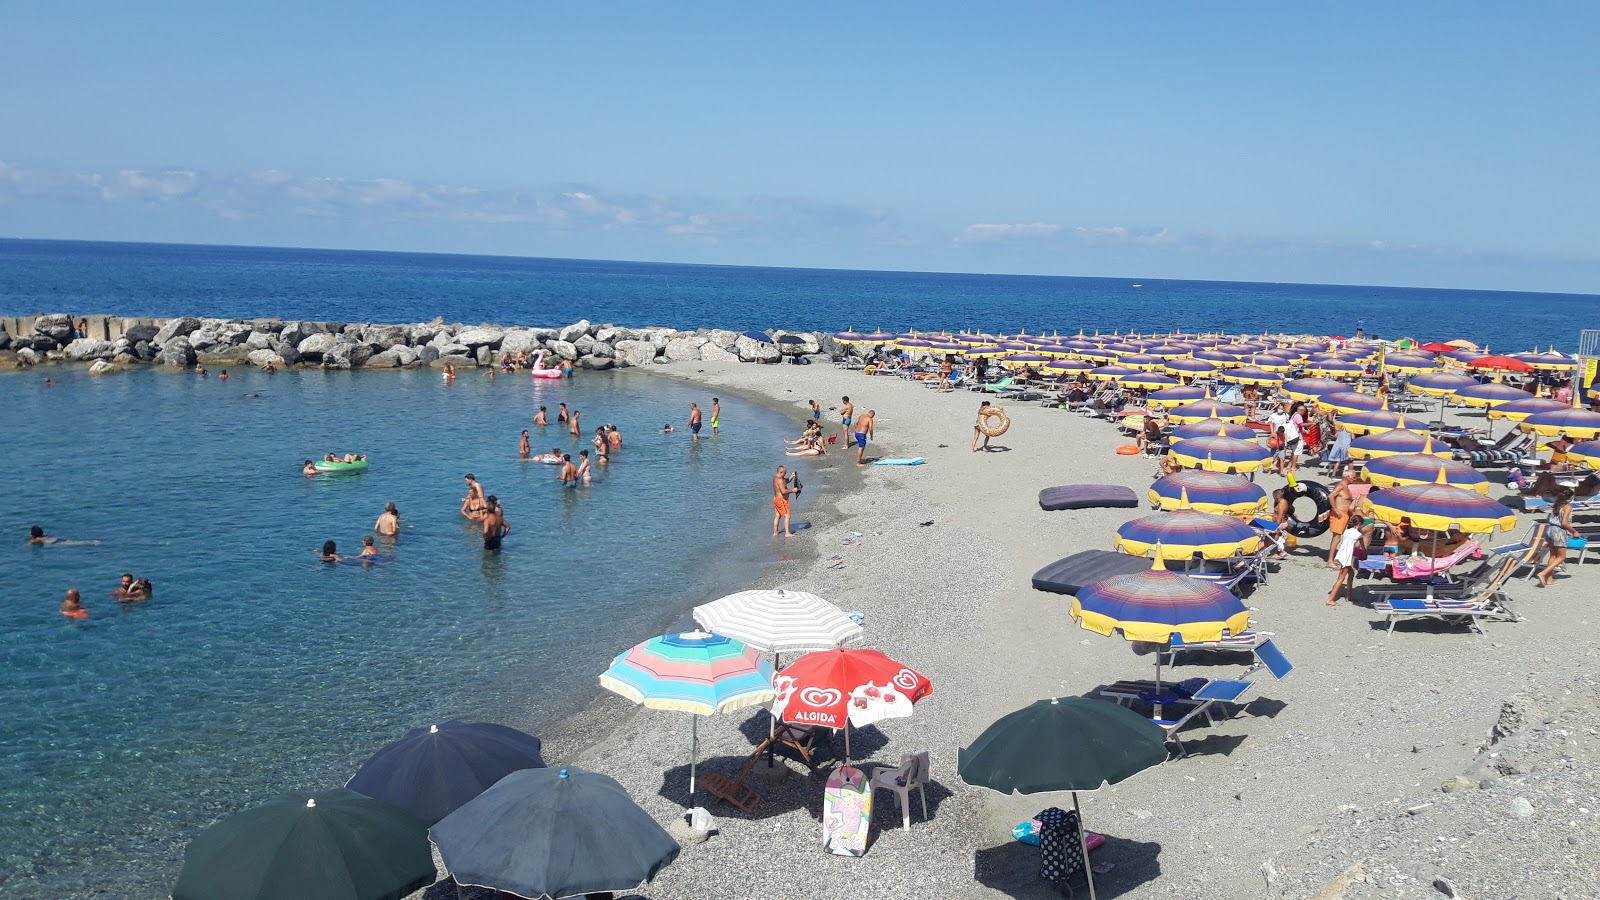 Spiaggia Coreca'in fotoğrafı gri kum yüzey ile